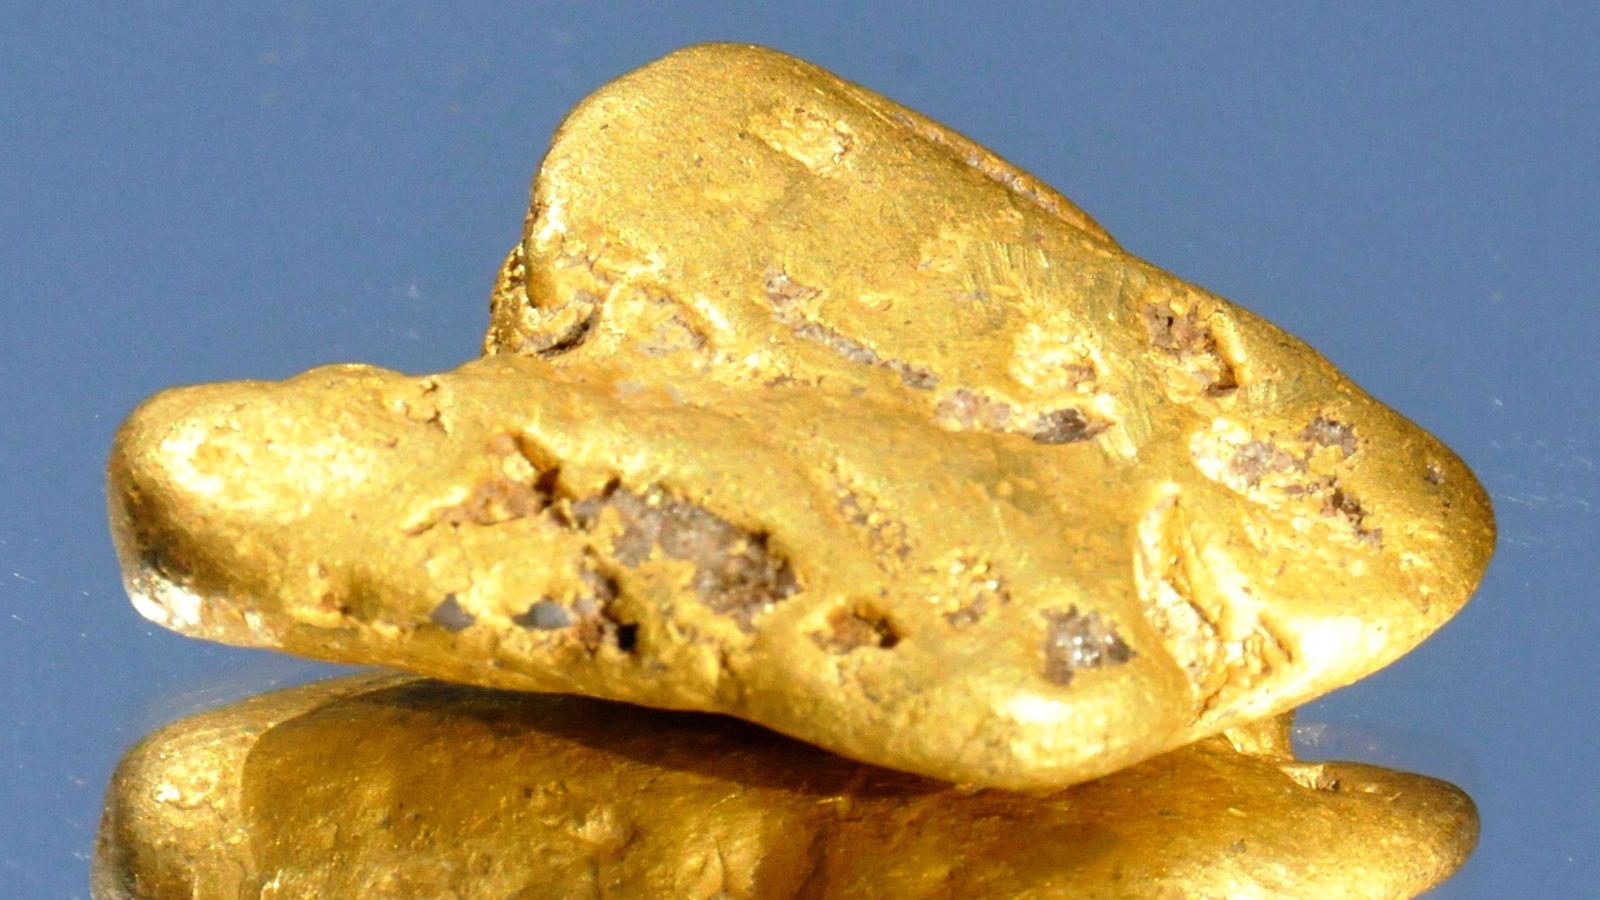 Шропшър: Човек намира най-голямото самородно злато в Англия с дефектен детектор, след като закъснява с един час, за да копае